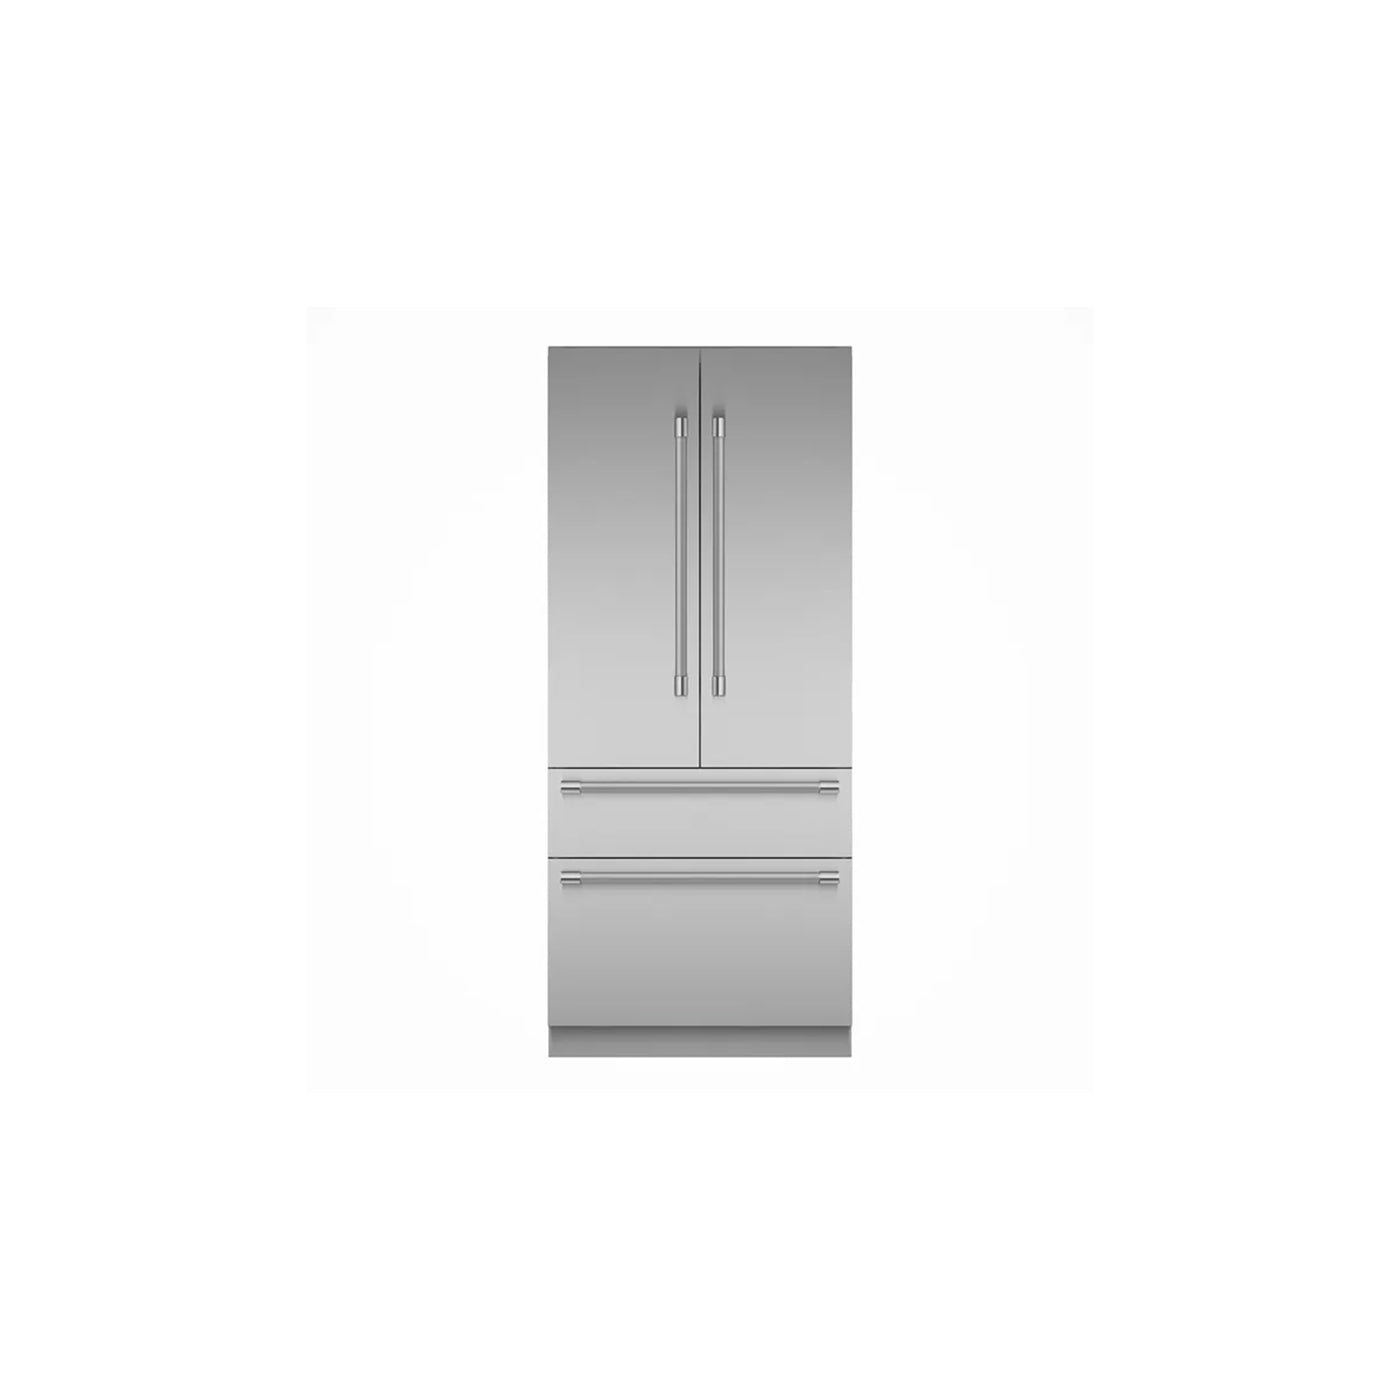 36" Freedom® Built-in French Door Bottom Freezer